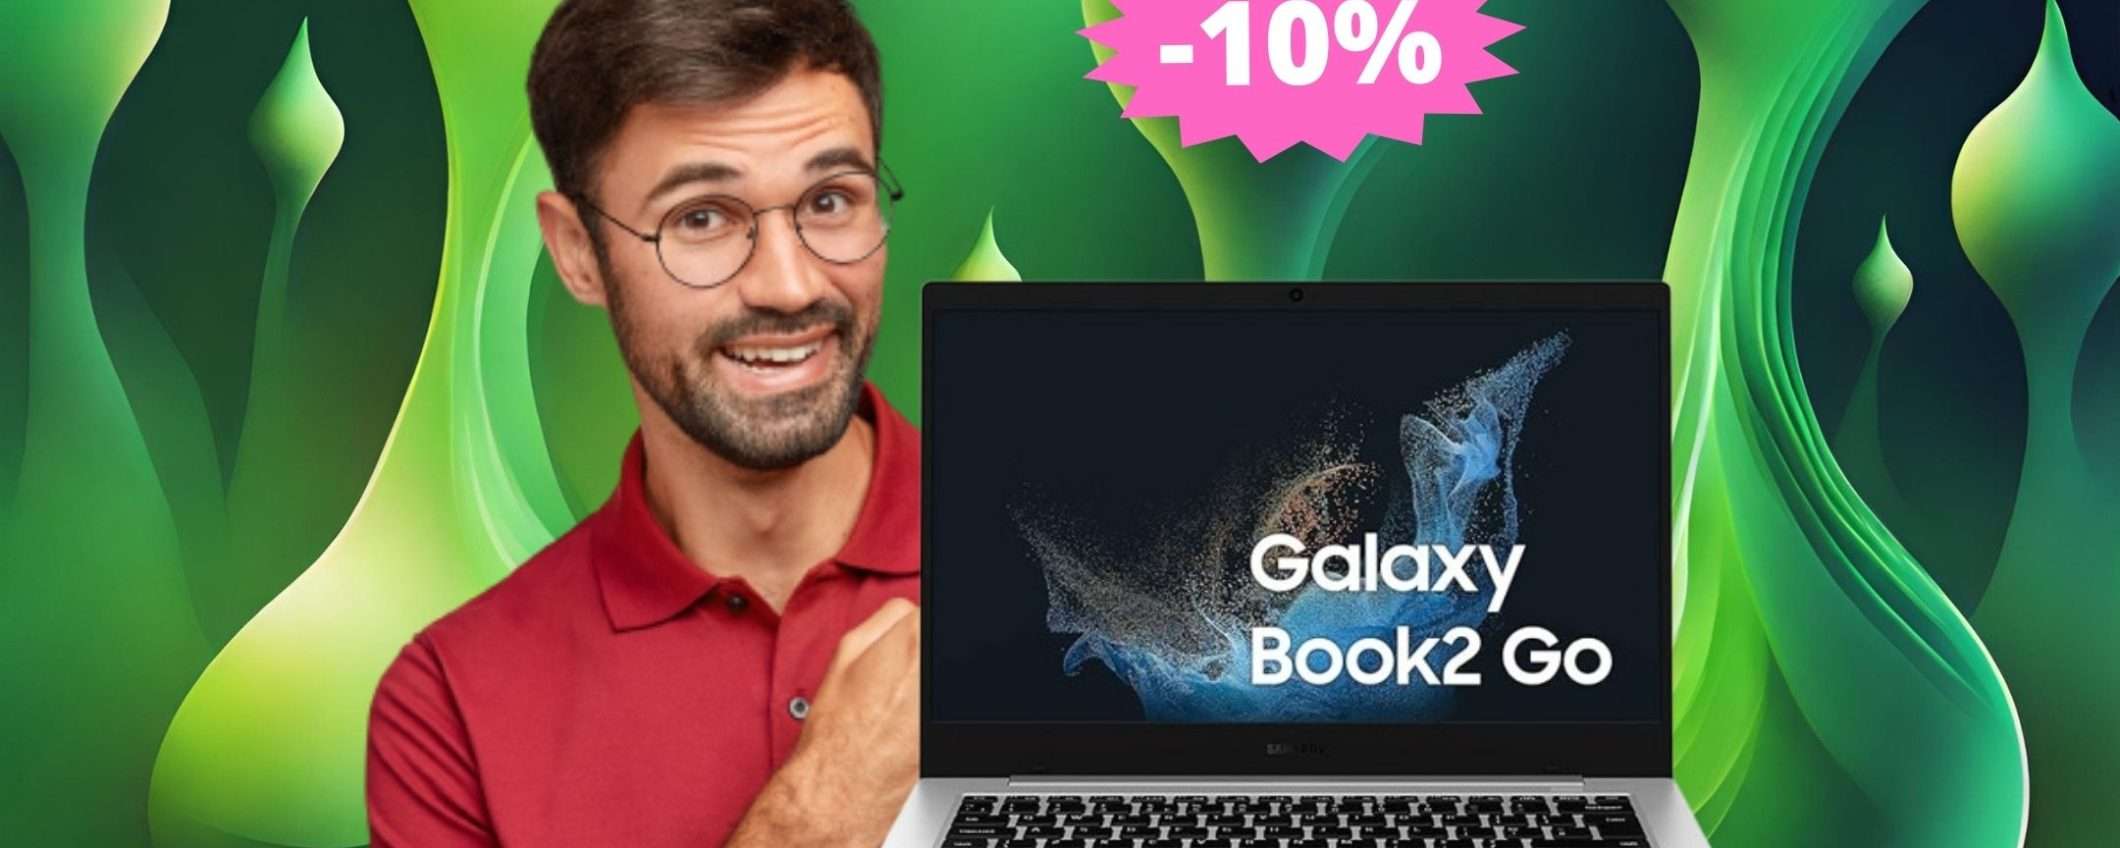 Samsung Galaxy Book2 Go: l'offerta che non puoi perdere (-10%)